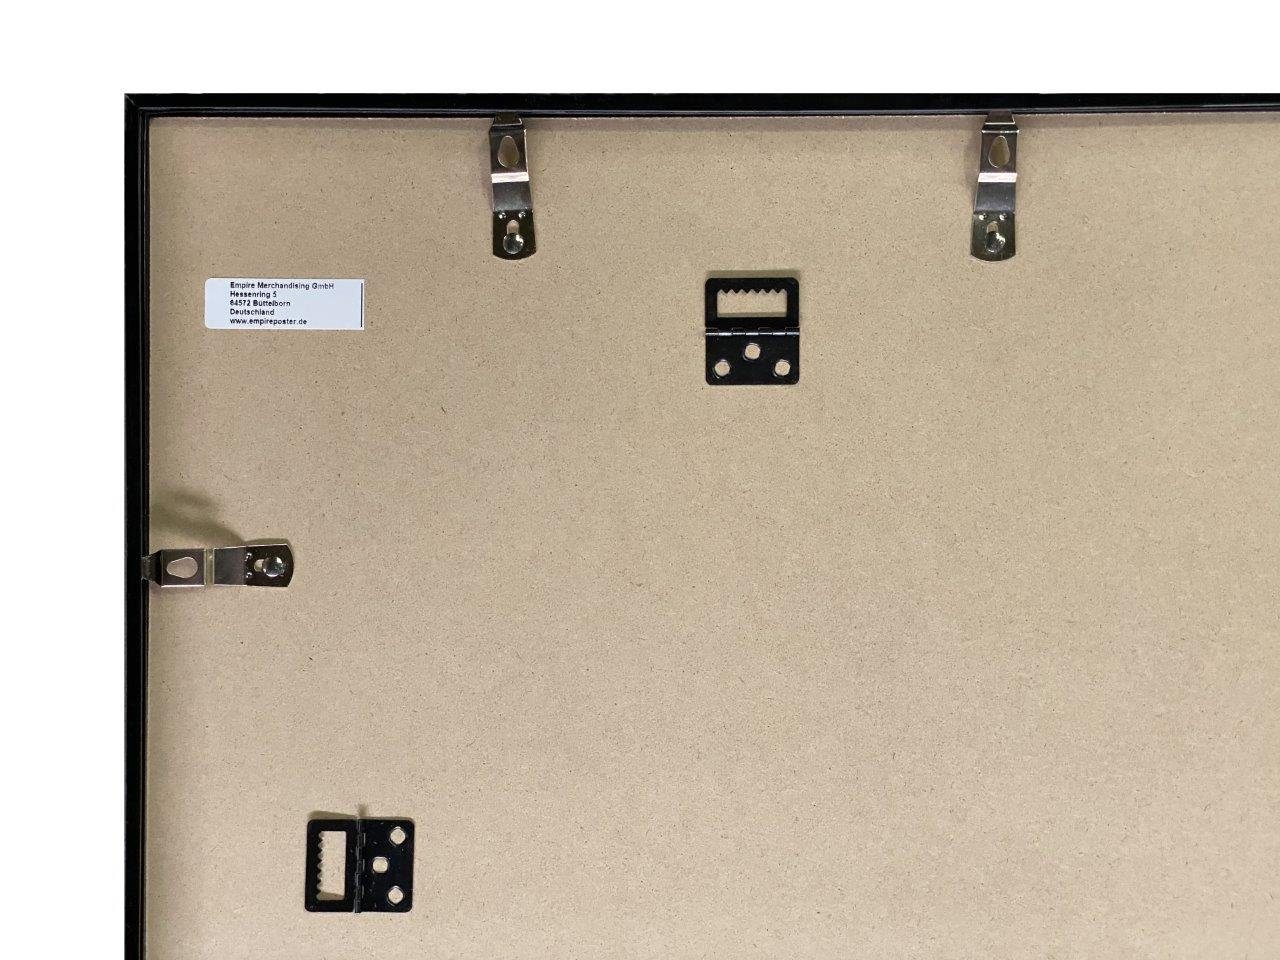 empireposter 15mm Acryl-Scheibe mit Farbe Profil: Maxi-Poster Wechselrahmen 61x91,5cm, Shinsuke® Rahmen grün Posterrahmen Kunststoff